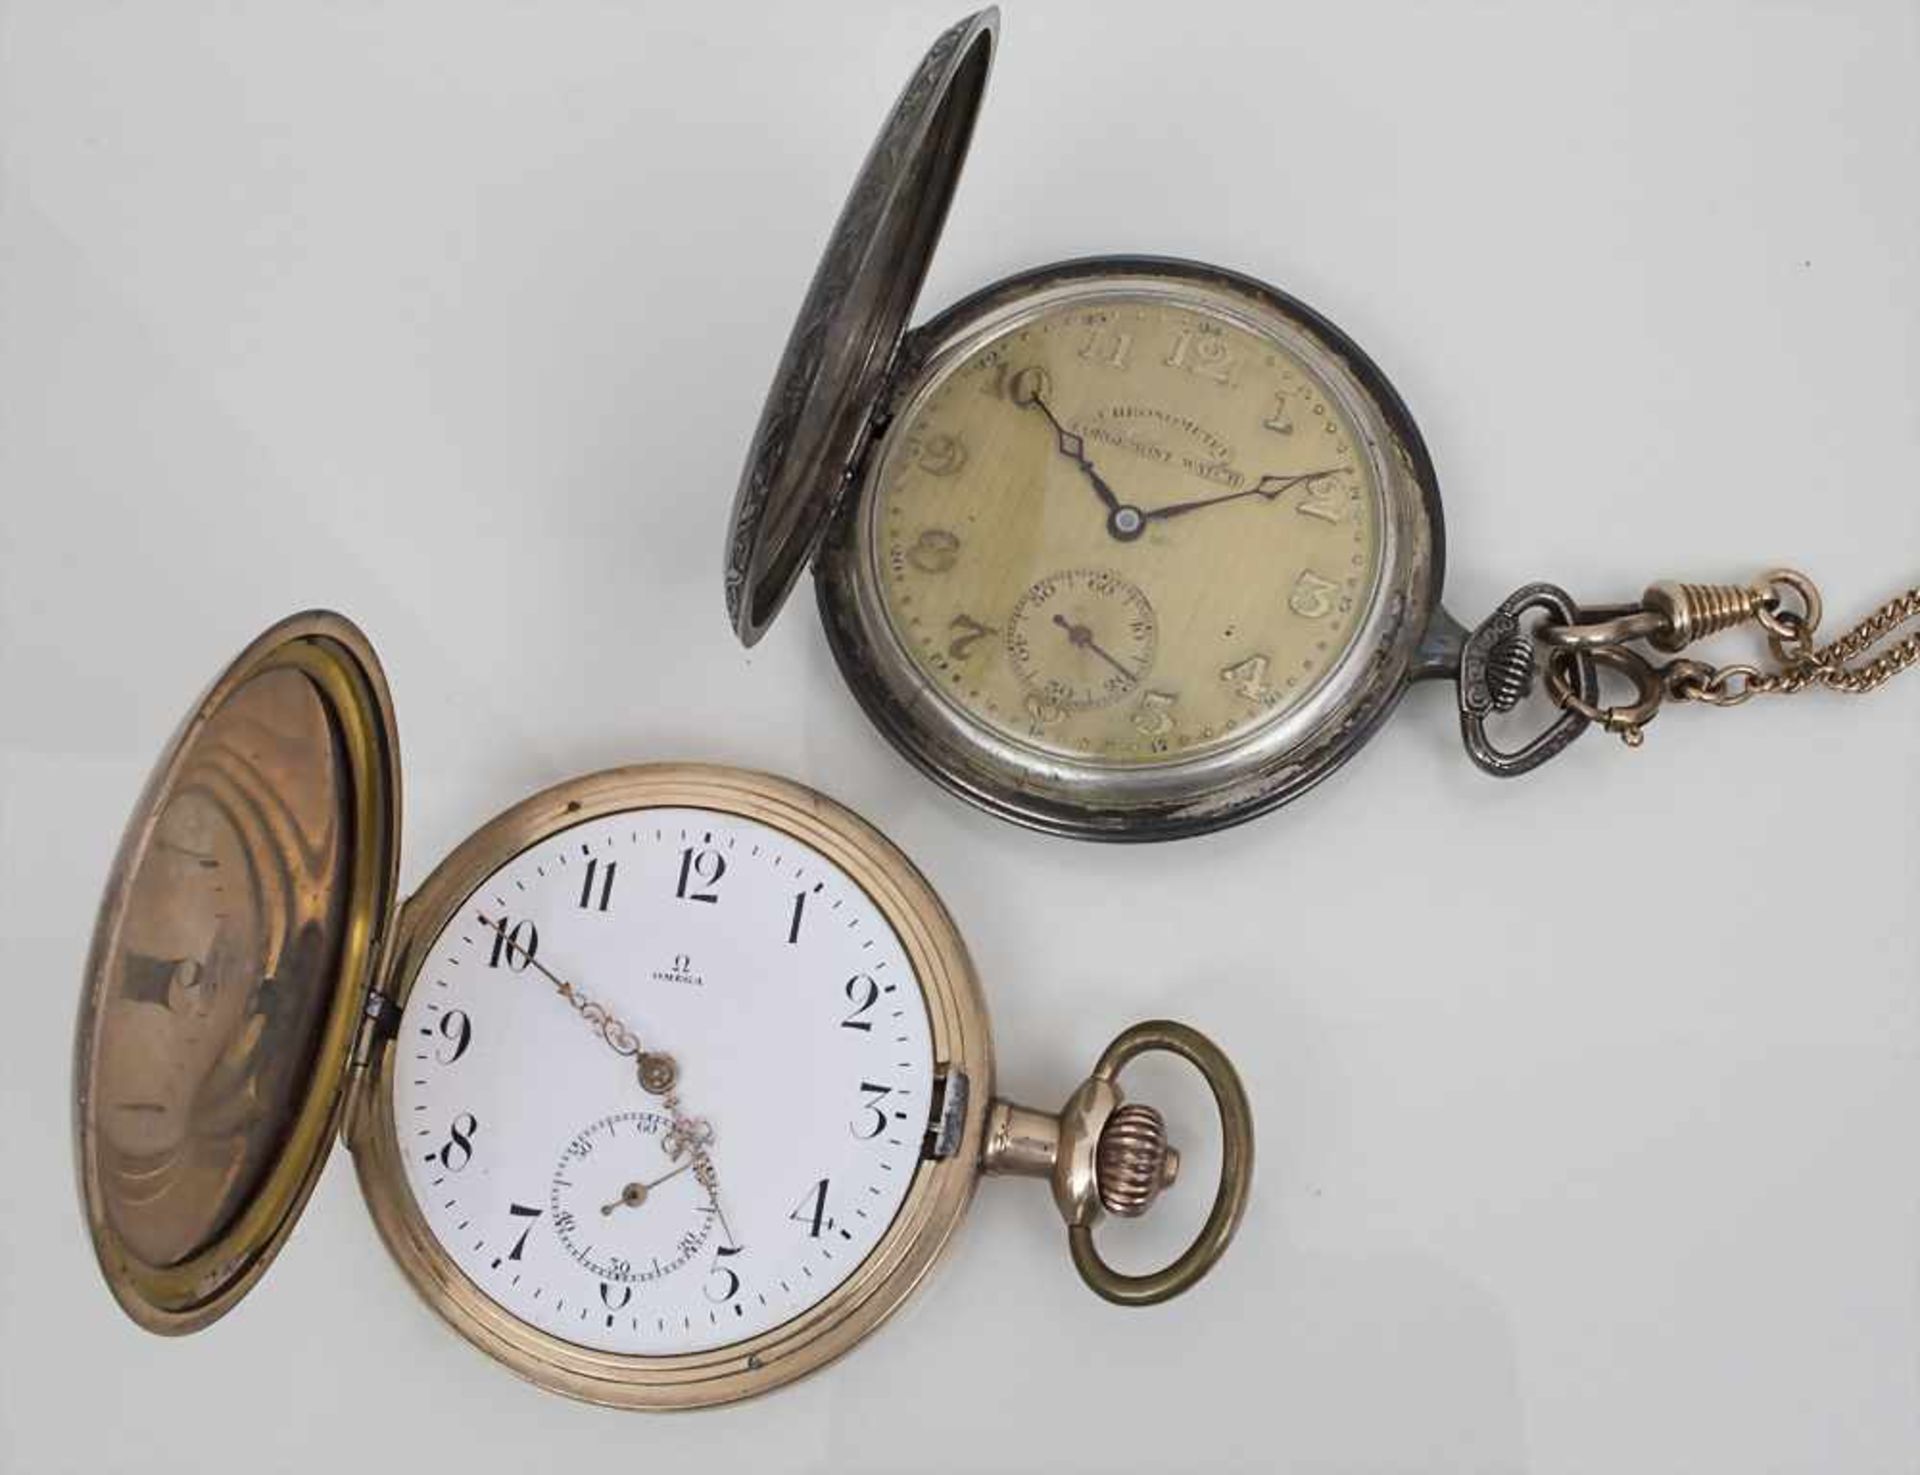 2 Savonettes Omega und Corgemont / 2 pocket watches Omega and Gorgemont, um 1920 Omega: